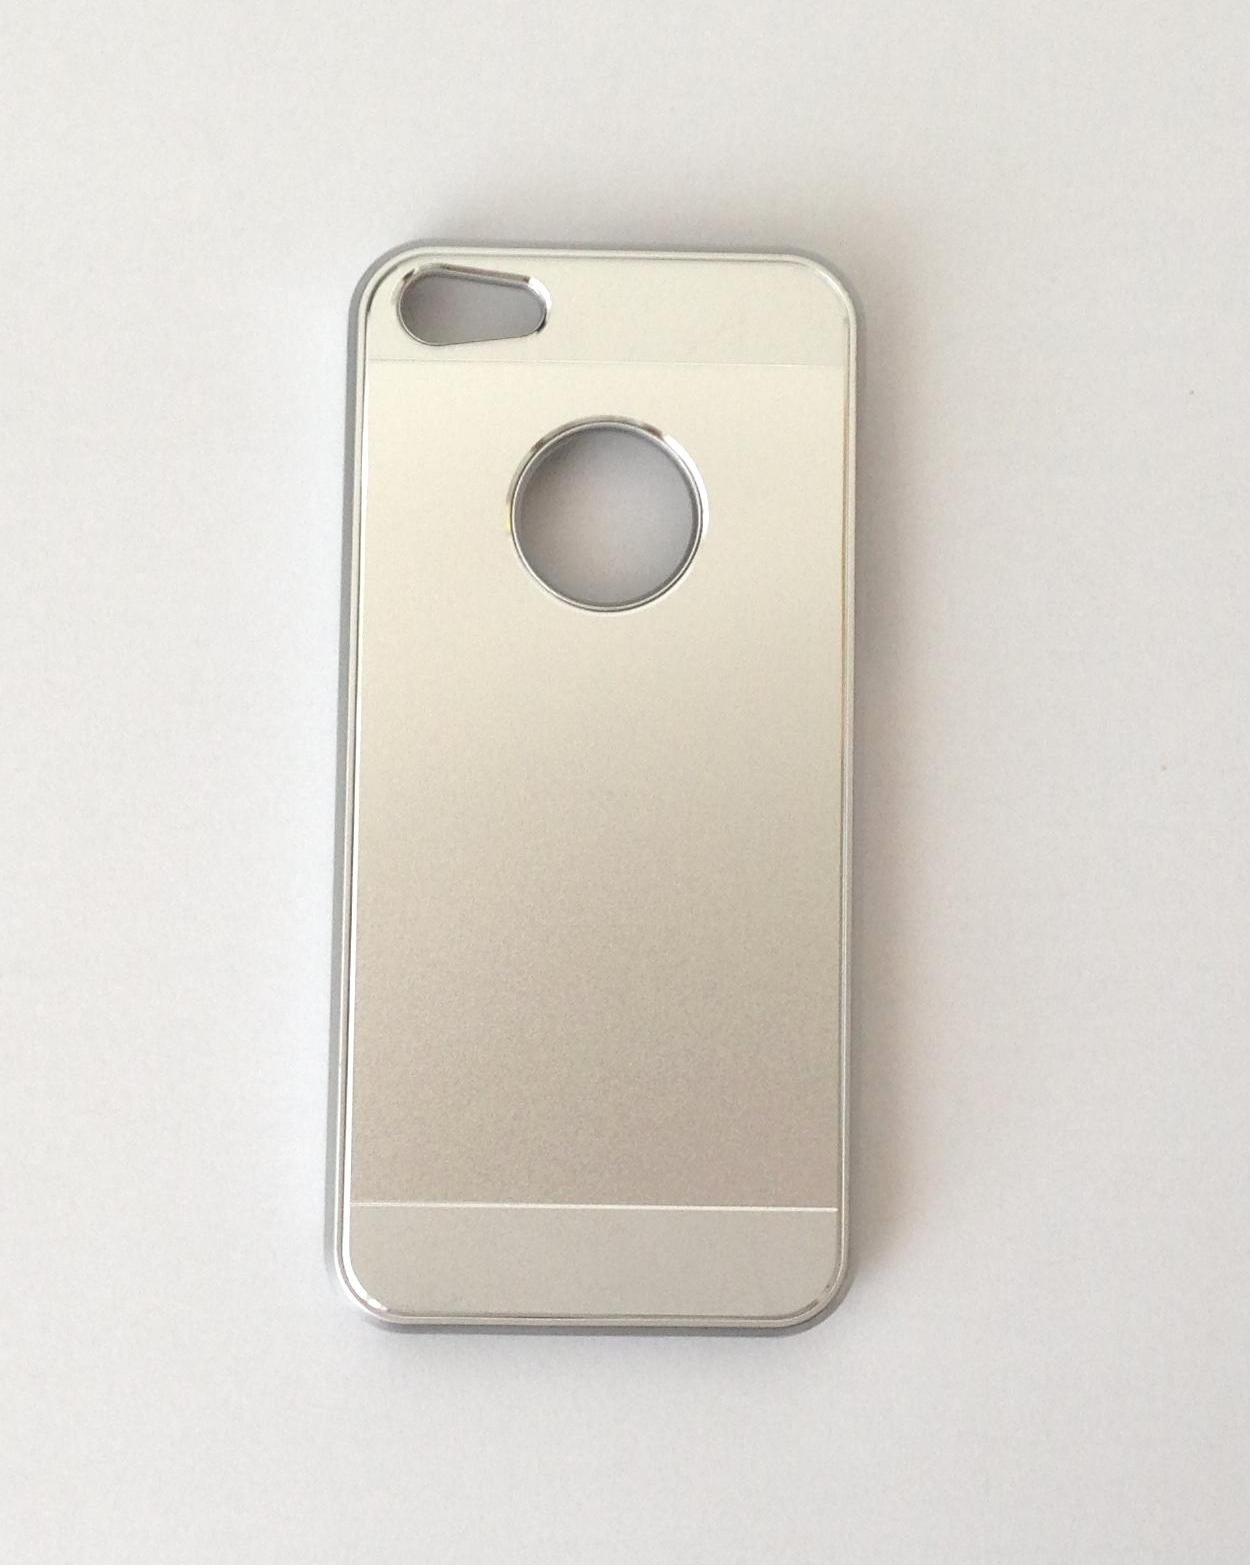 Metal Hardshell pouzdro pro iPhone 5, stříbrné